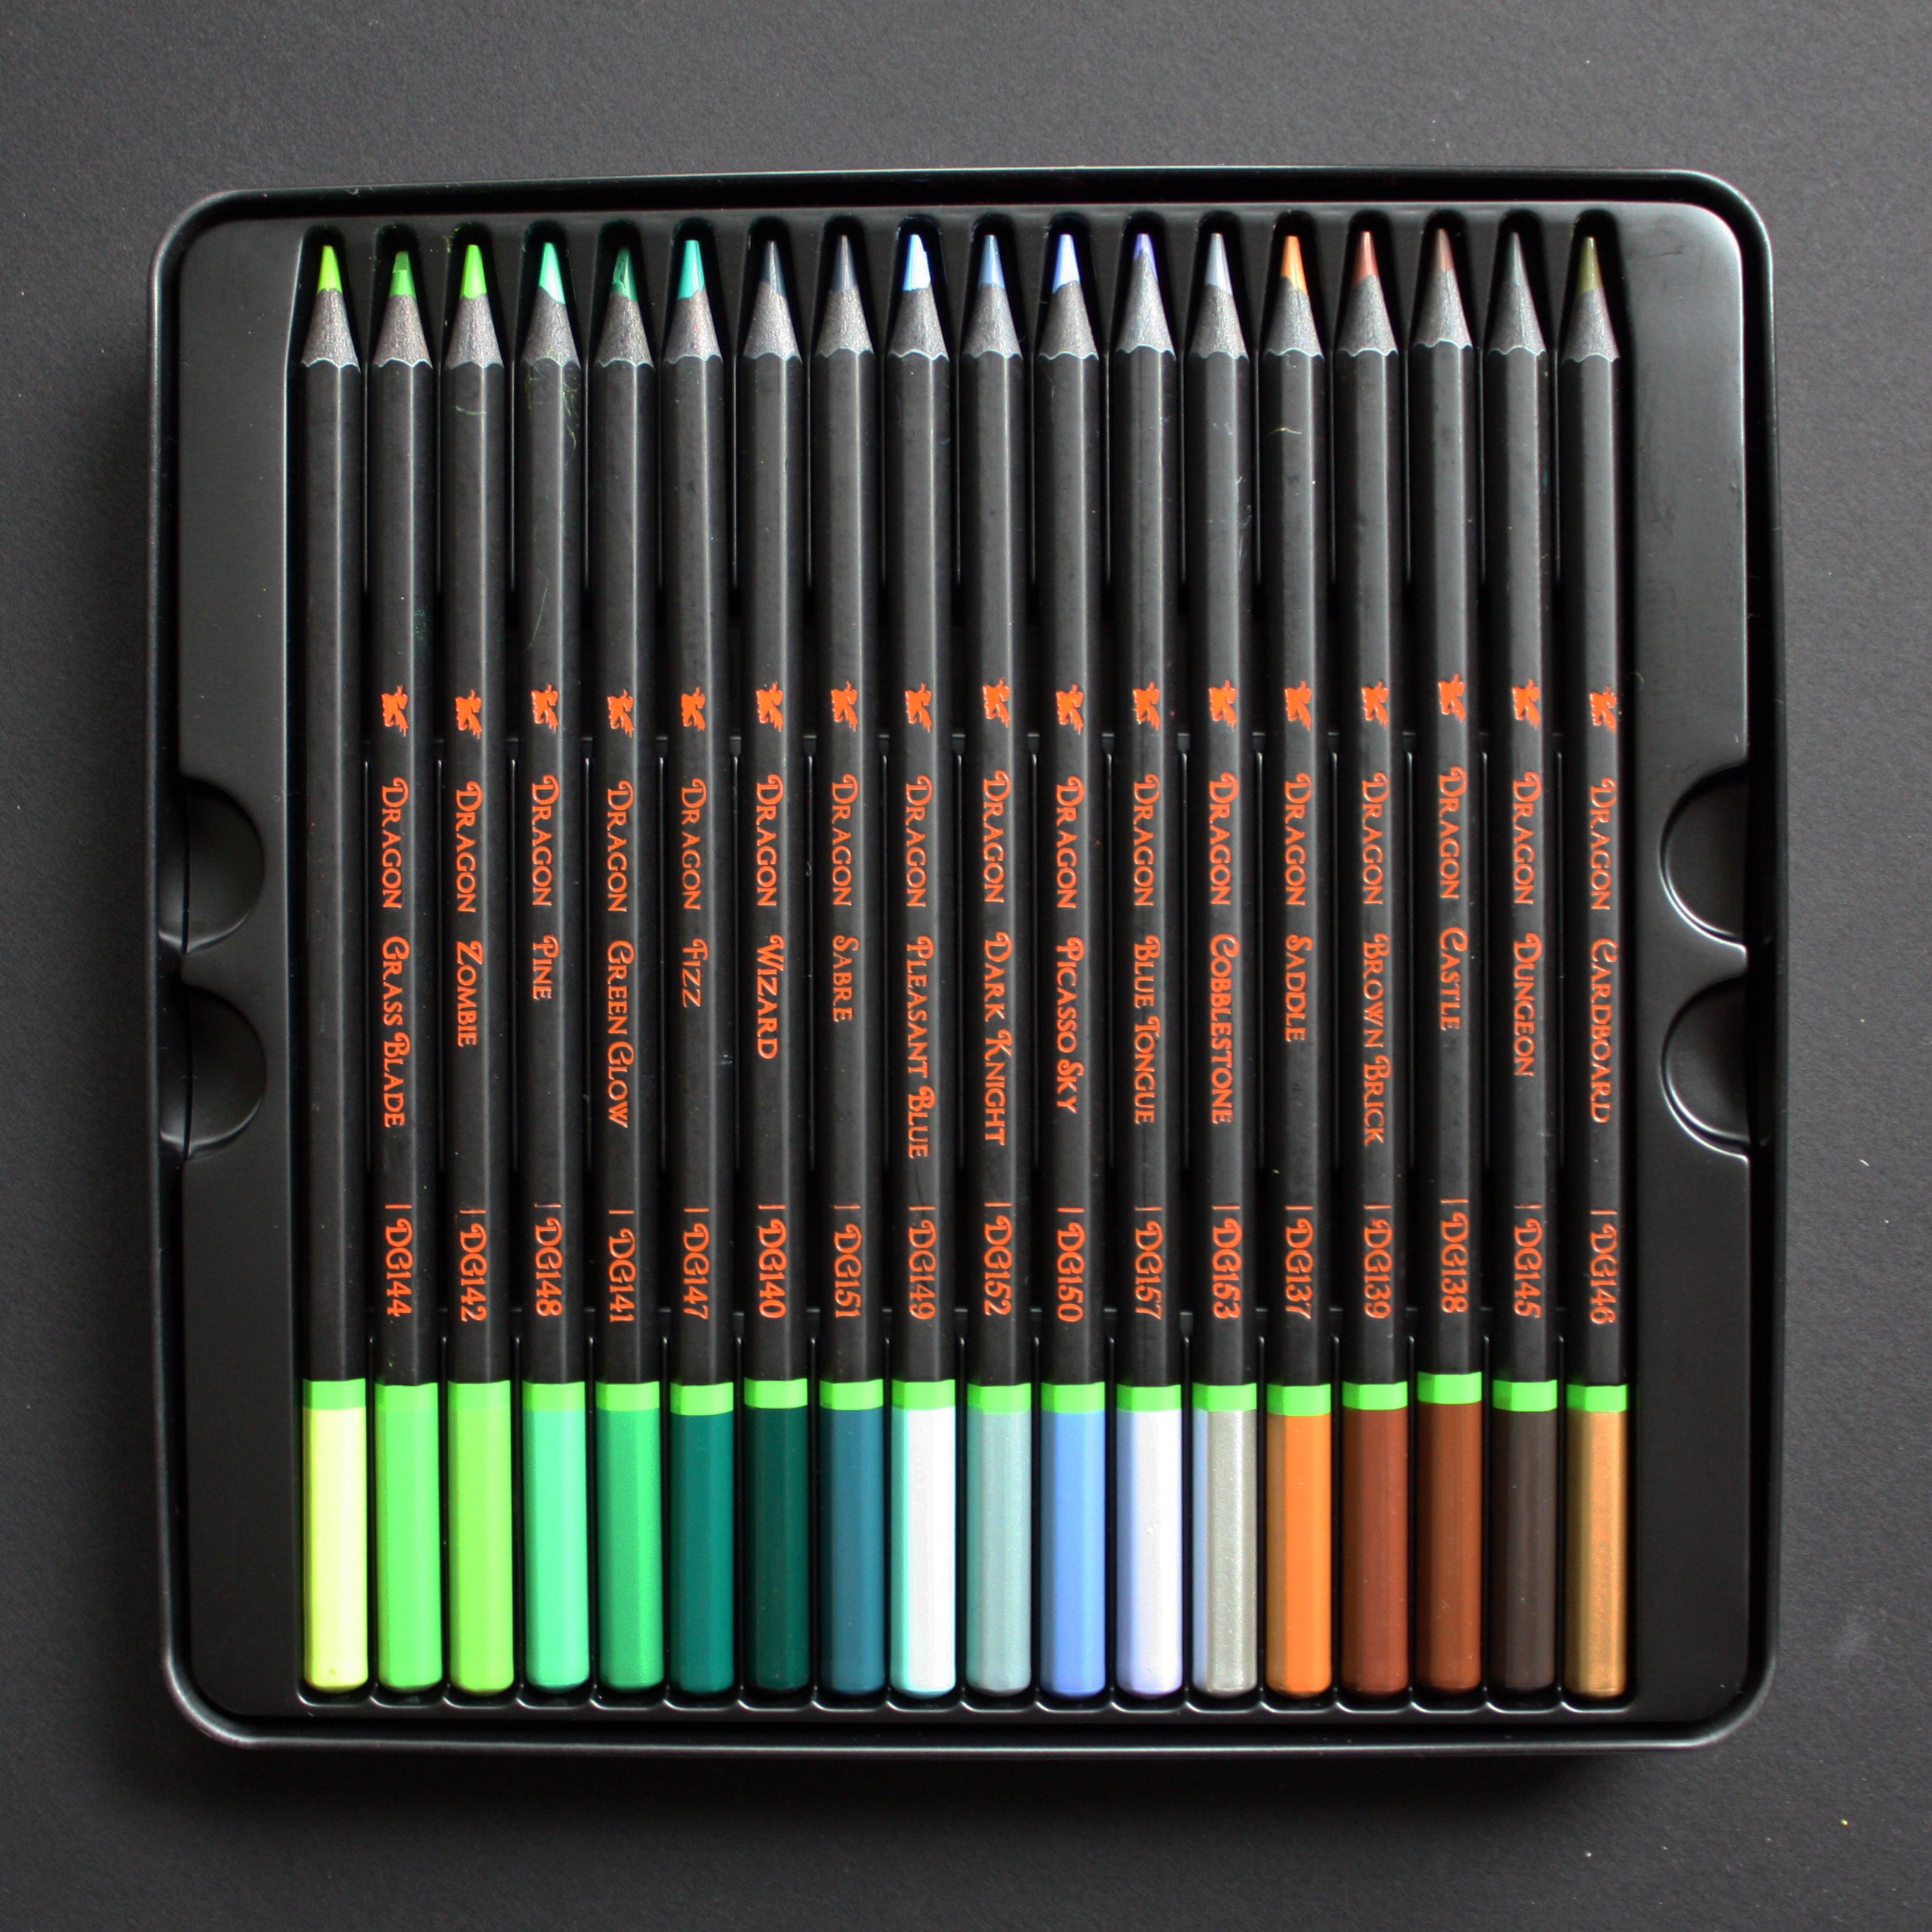 Black Widow Dragon Wax Colored Pencils Edition 4000DG - 36 Pencils